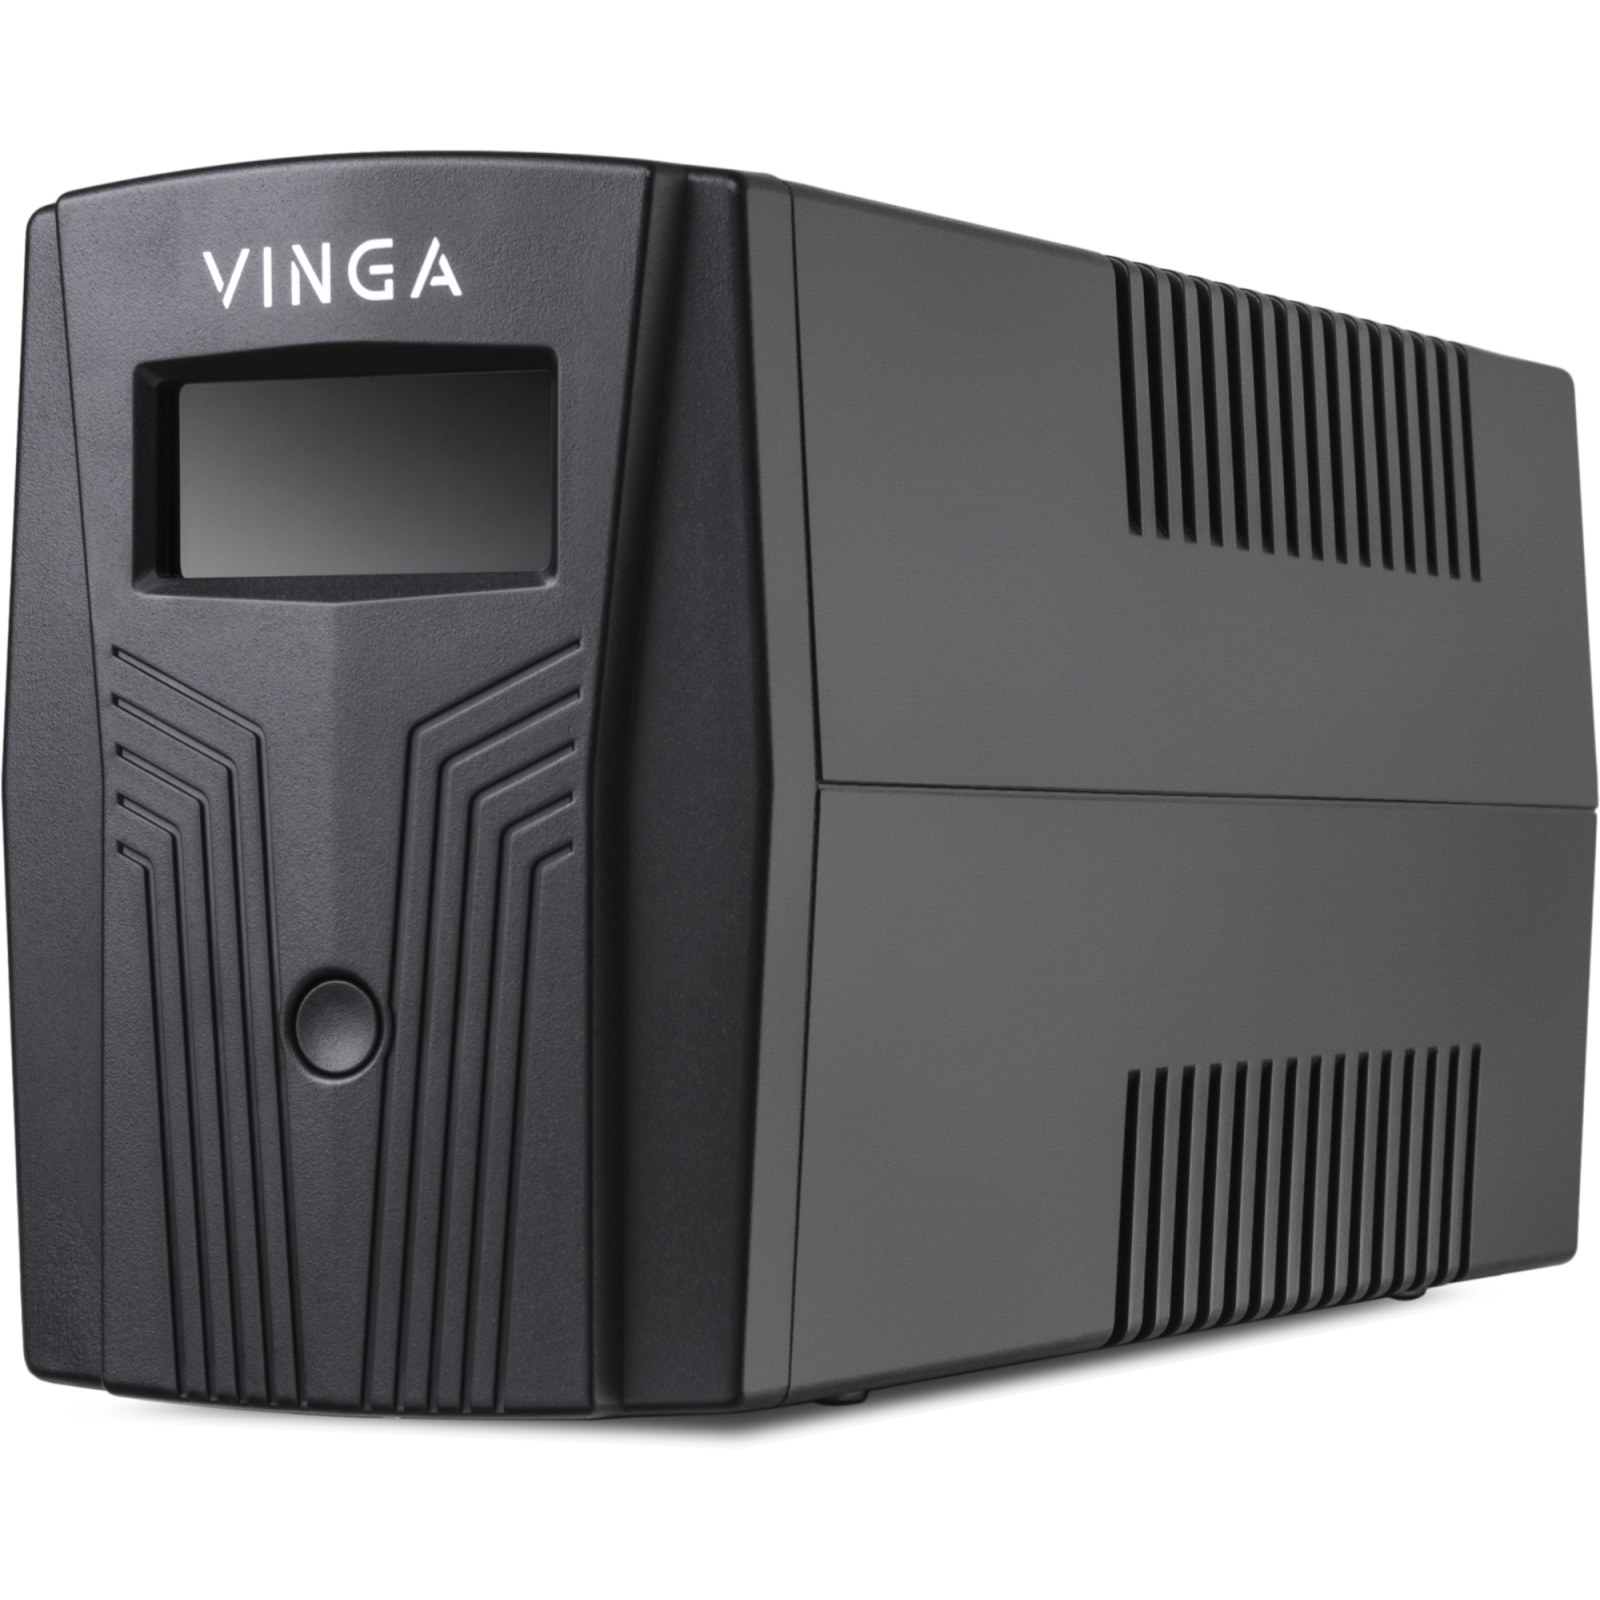 Источник бесперебойного питания Vinga LCD 600VA plastic case (VPC-600P) изображение 7